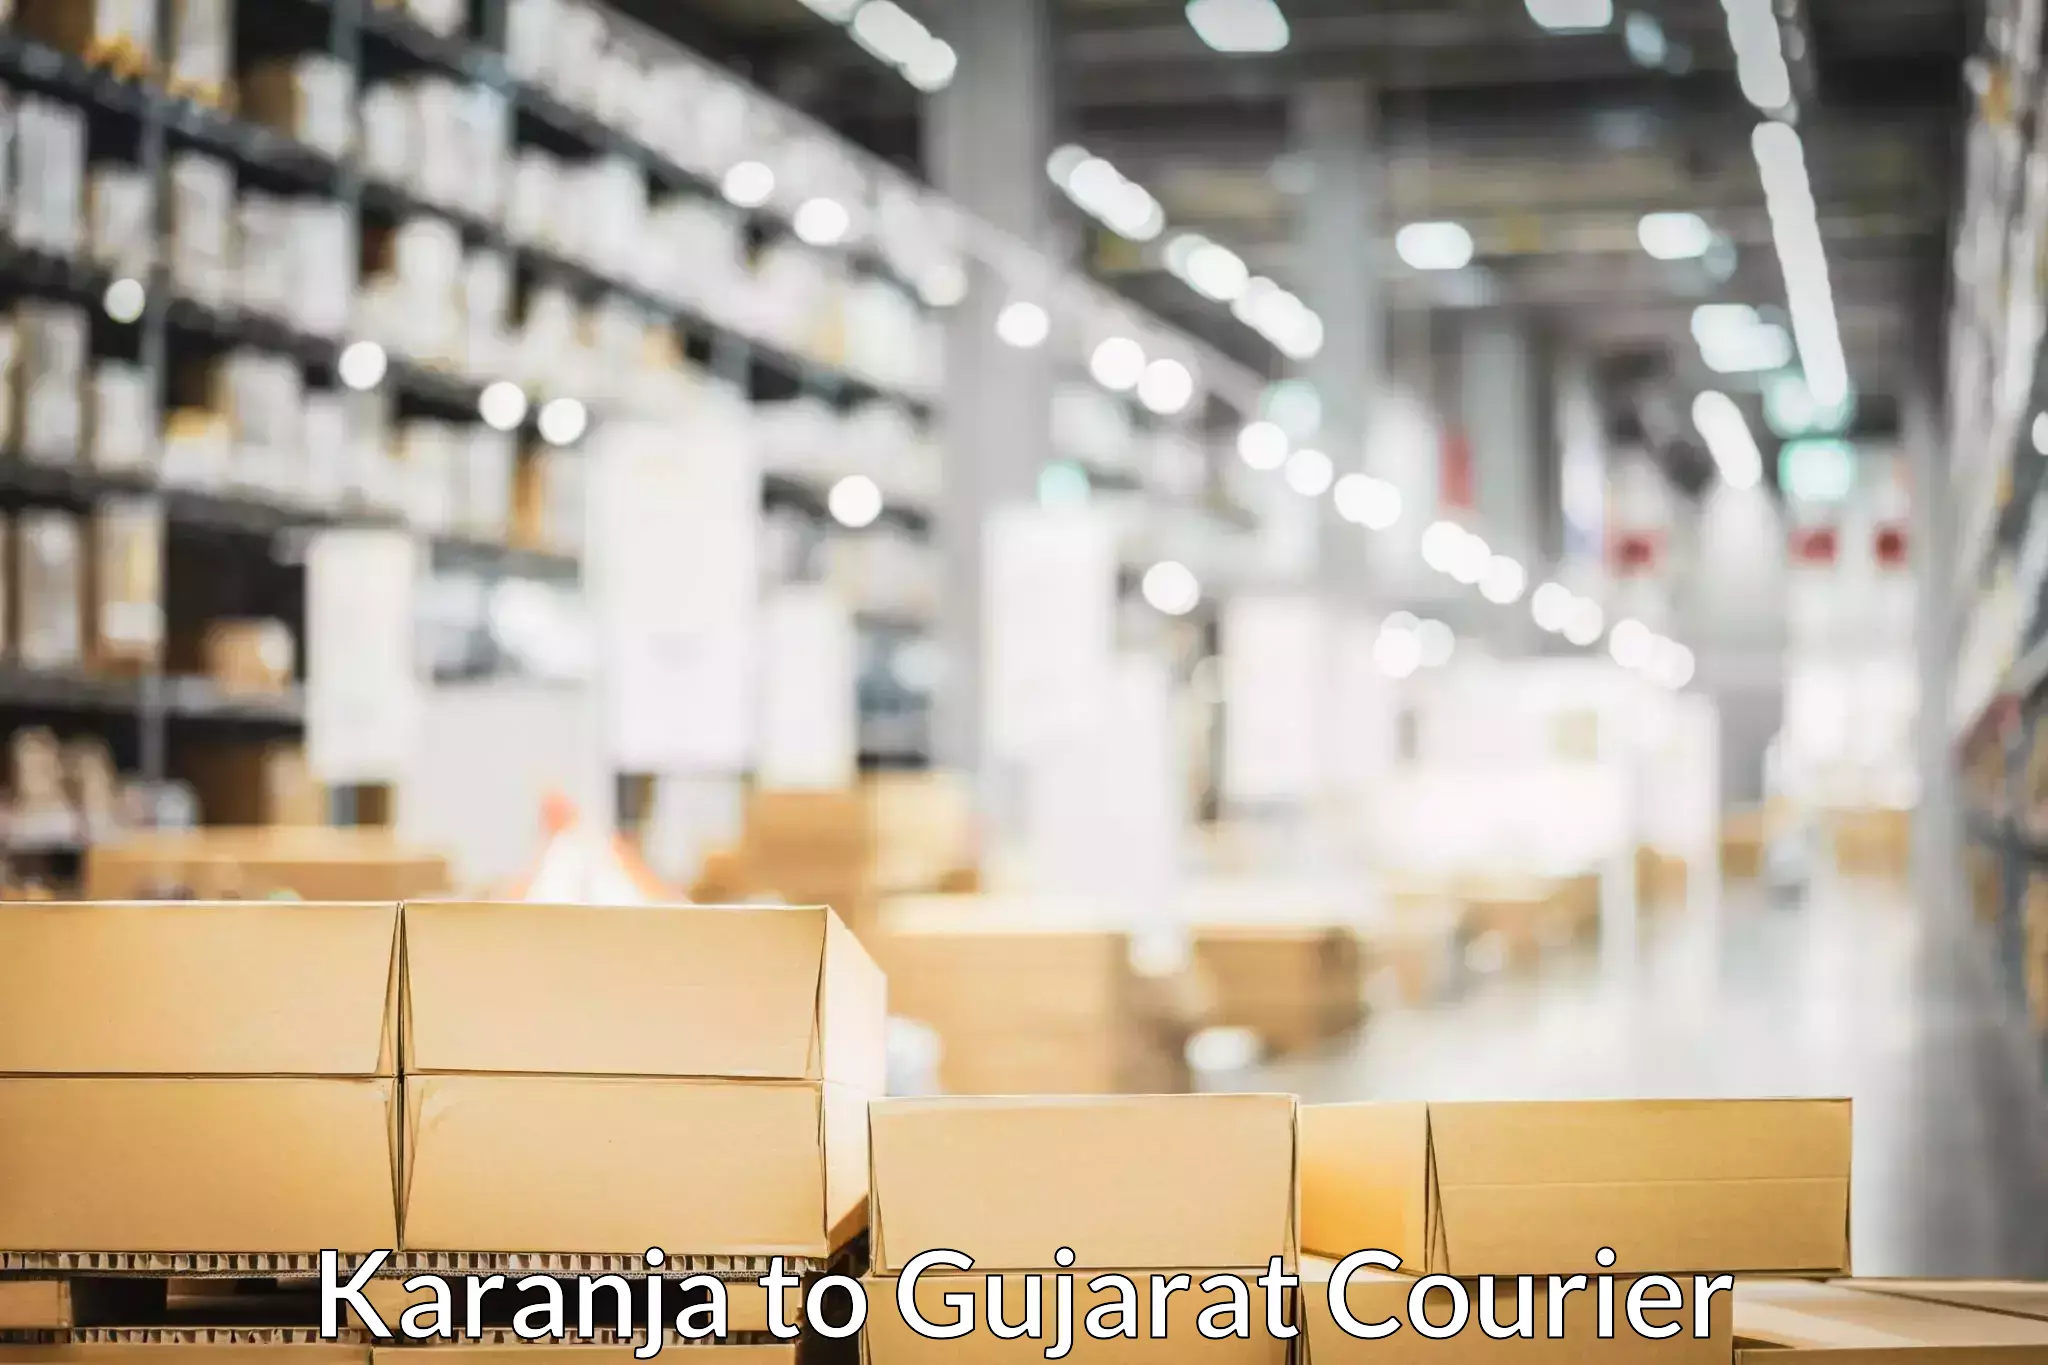 Customized household moving in Karanja to Gujarat